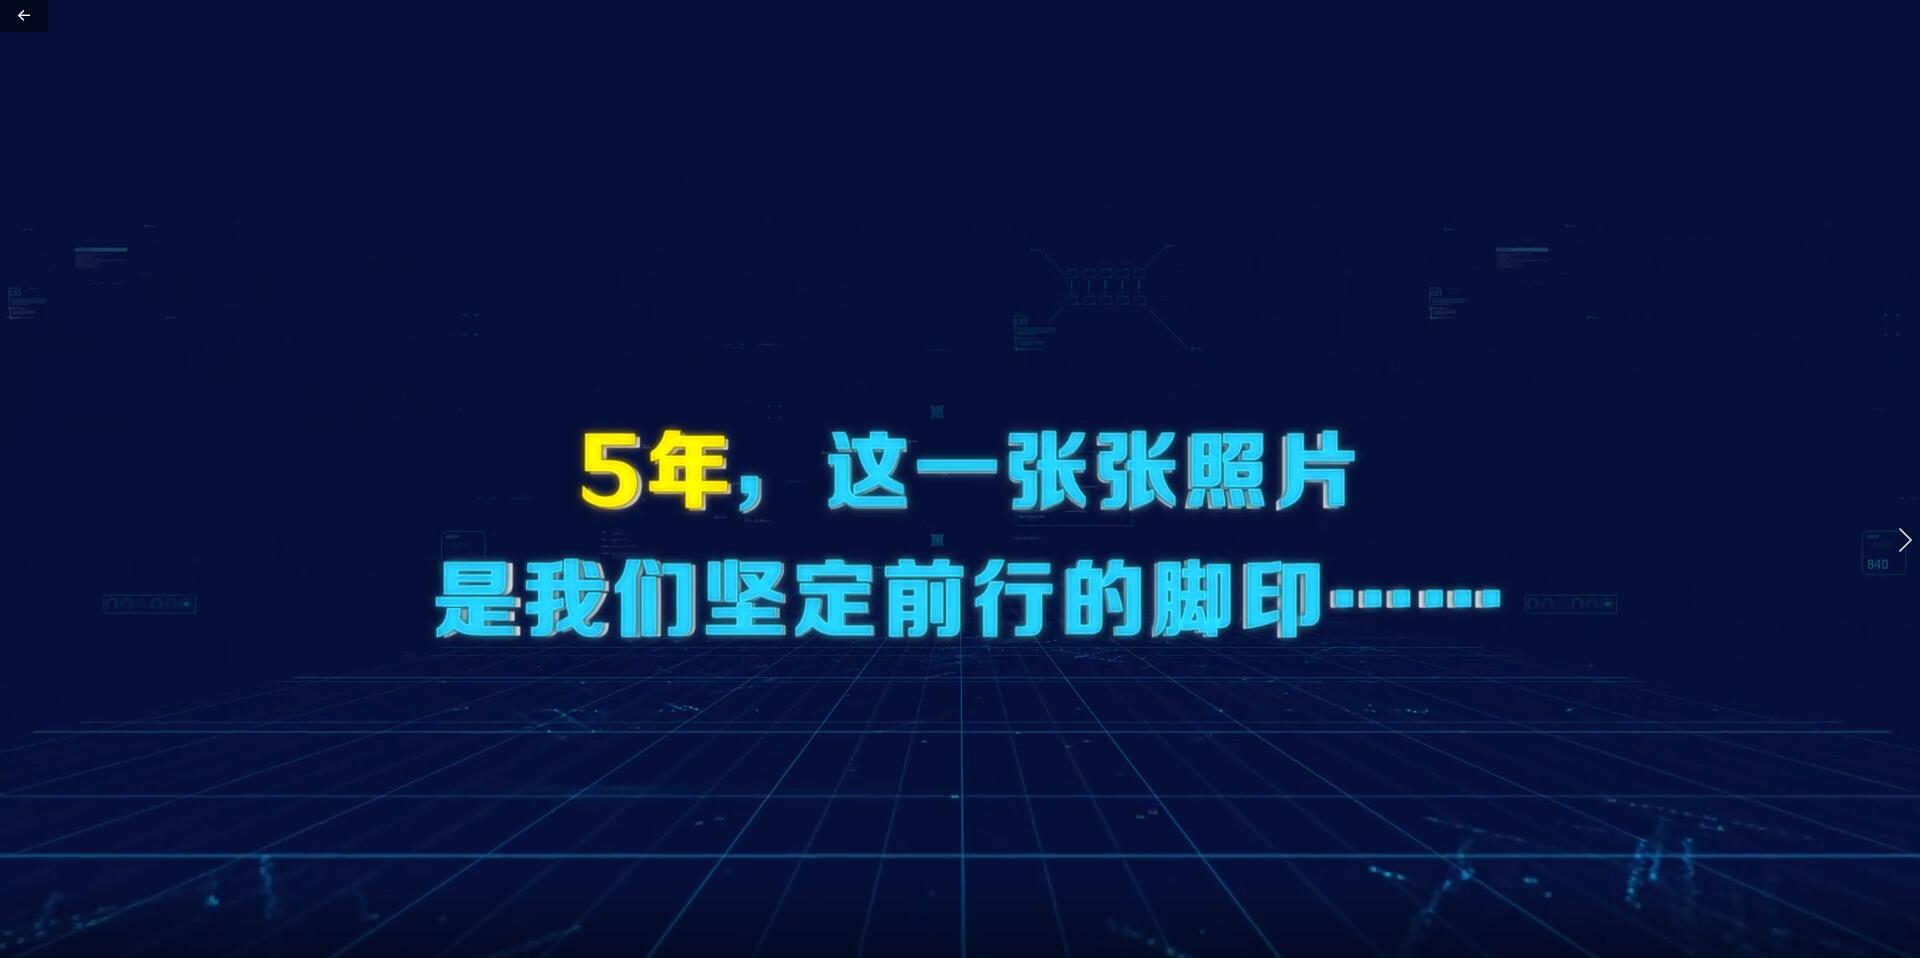 大横琴科技公司宣传片